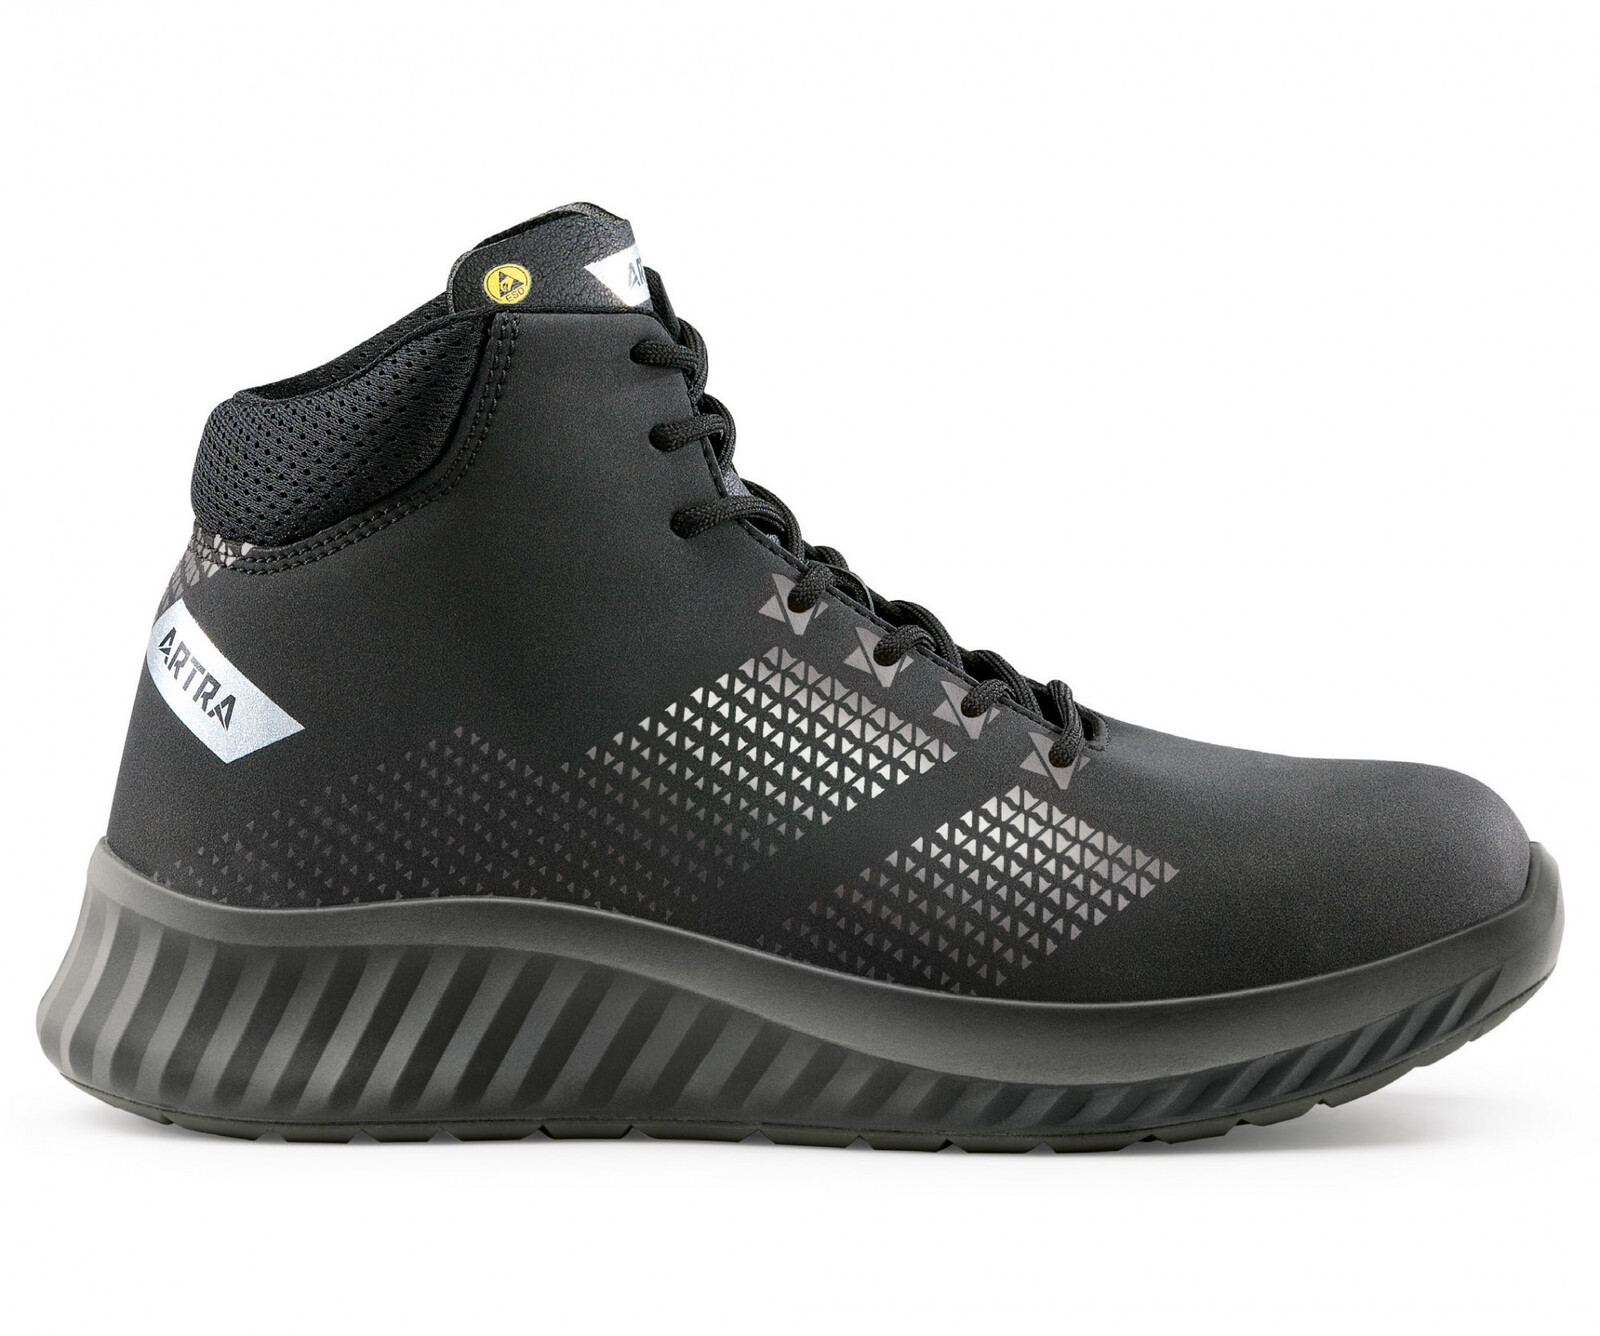 Bezpečnostná členková obuv Artra Aroserio 750 616560 S3 SRC ESD - veľkosť: 39, farba: čierna/sivá